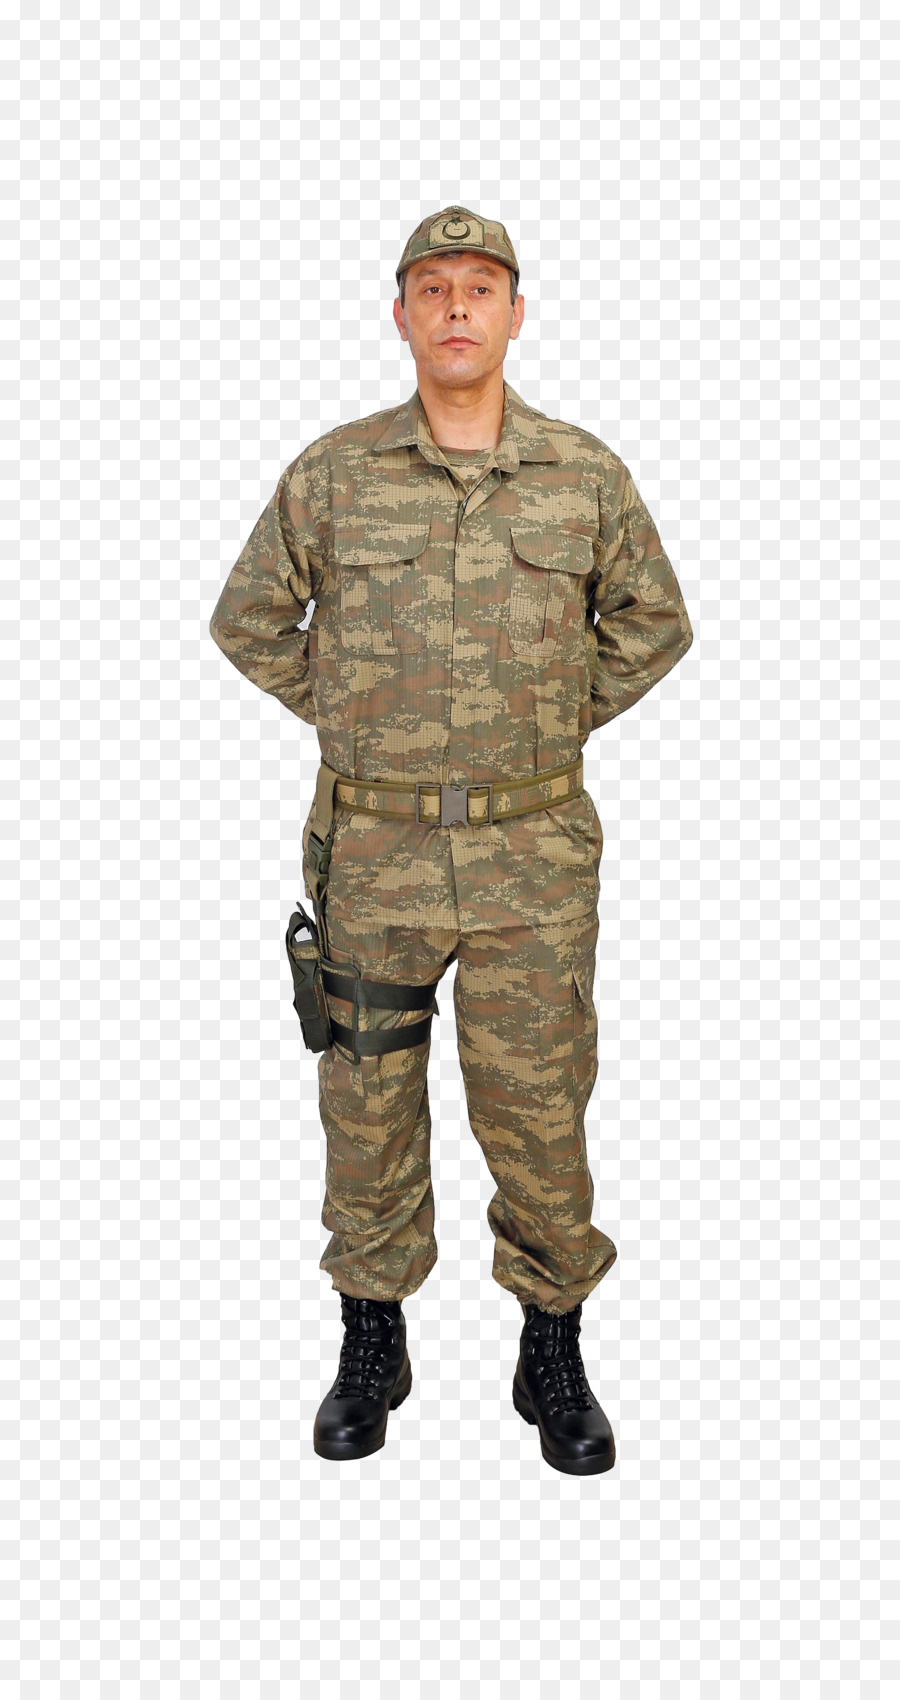 Soldat Militär-uniform, der Militärischen Erziehung und Ausbildung der Armee - Einheitliche